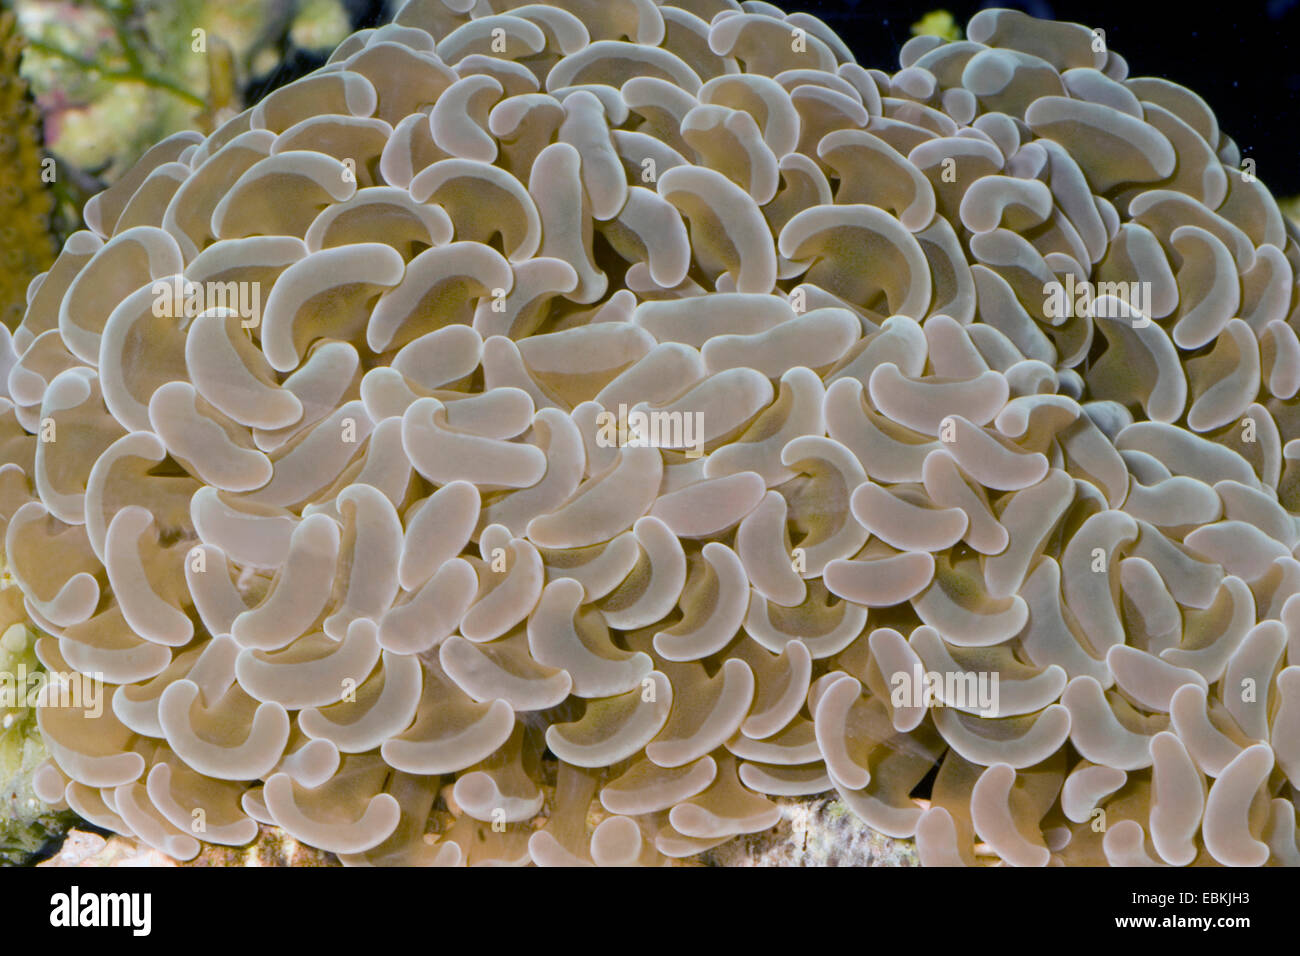 Hammer-dente coral, Anchor Coral, martello Cora (Euphyllia ancora), vista da vicino Foto Stock